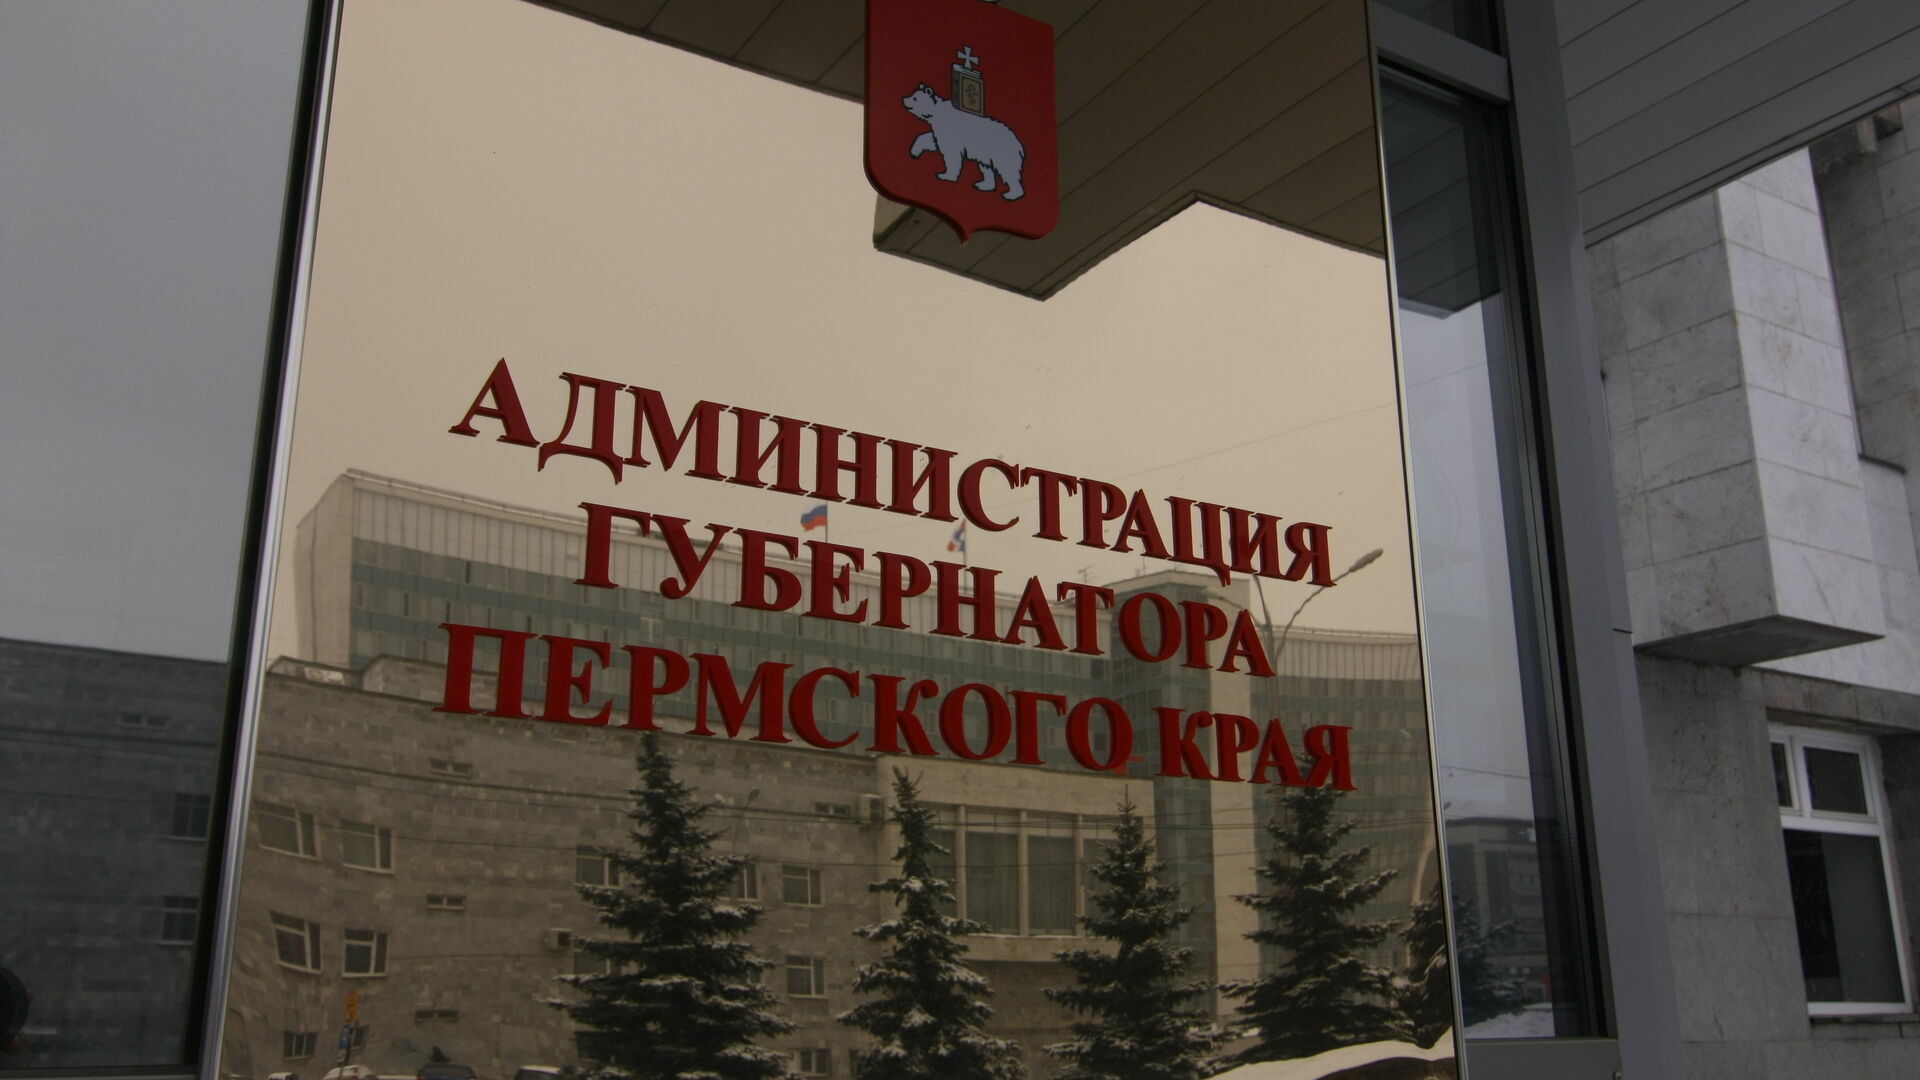 Администрацию губернатора Пермского края проконсультируют в самарском вузе